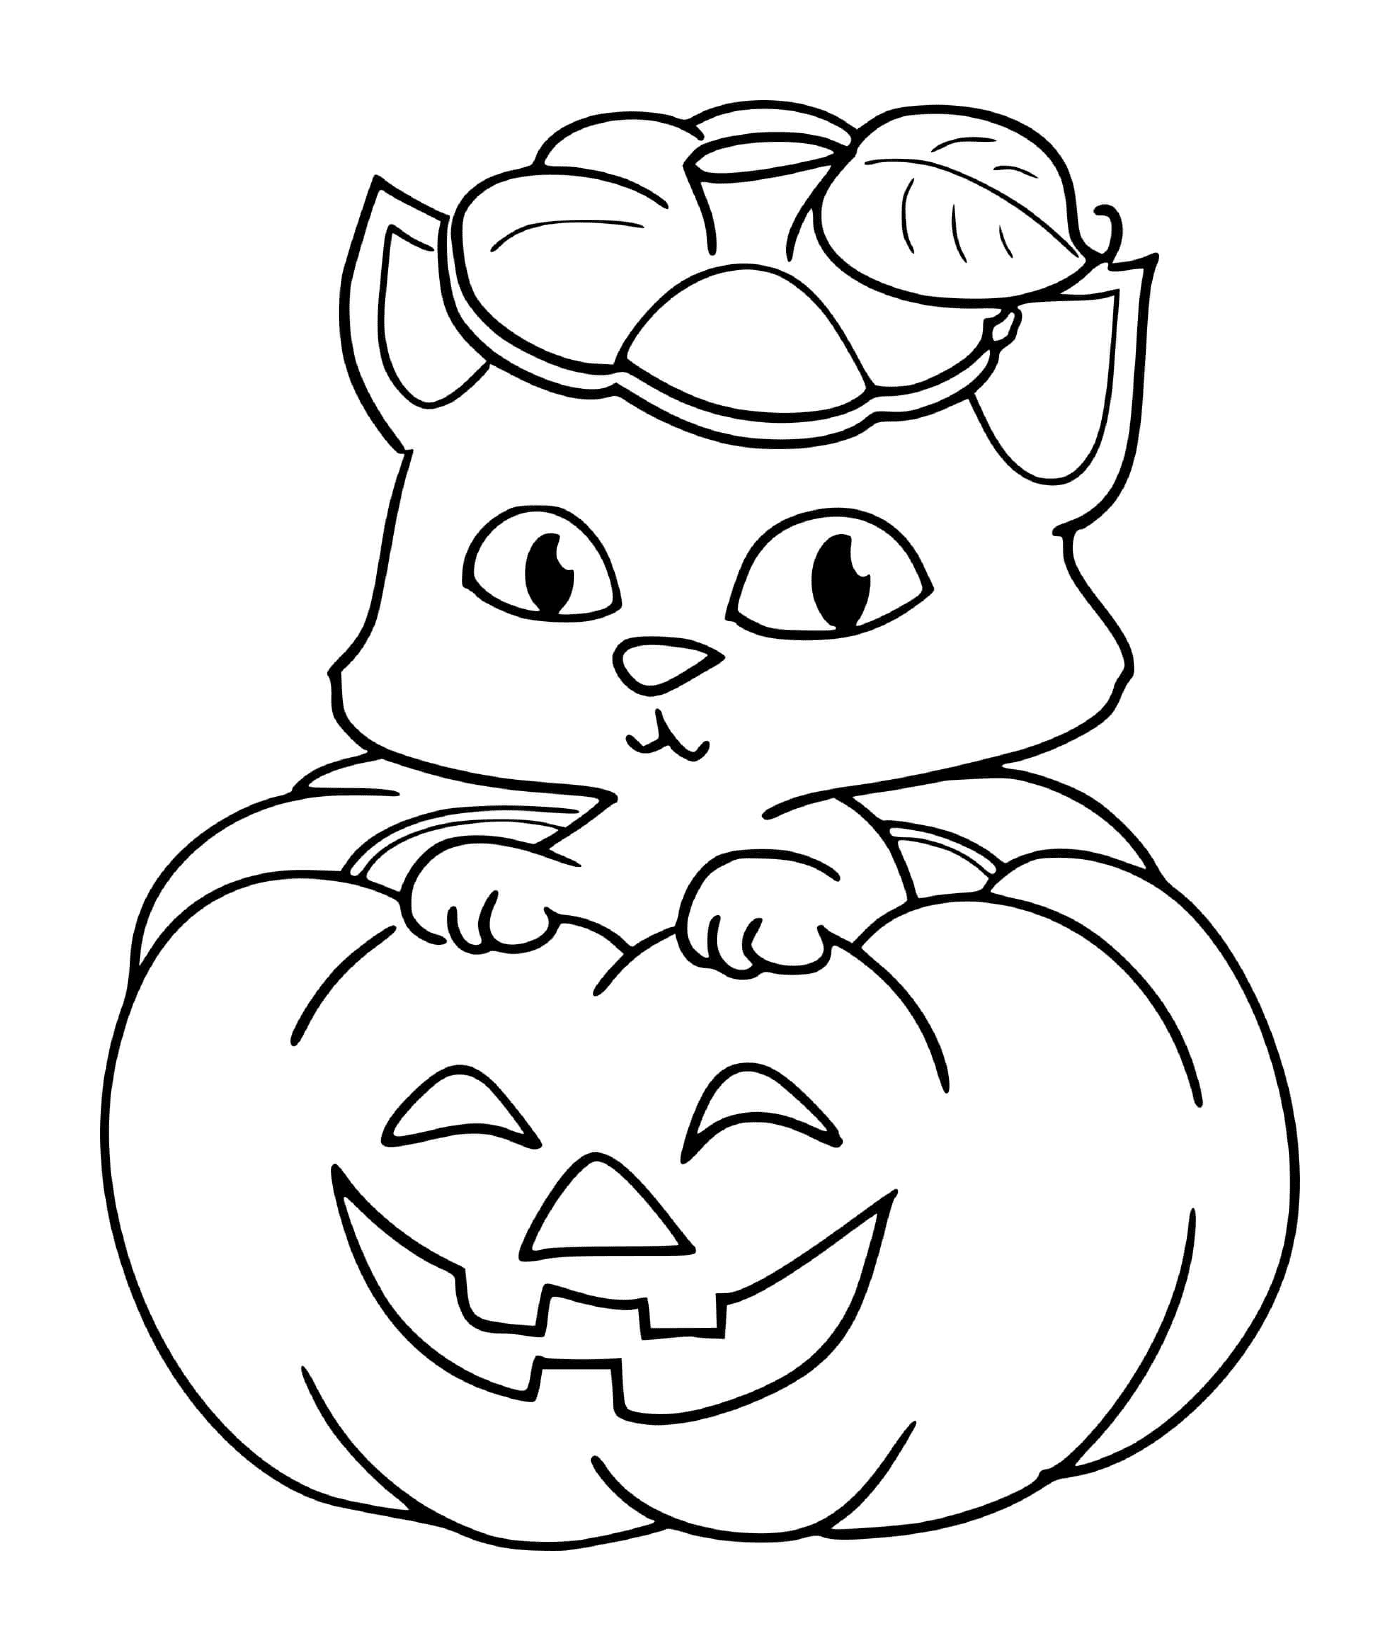  A kitten sitting on a pumpkin for Halloween 